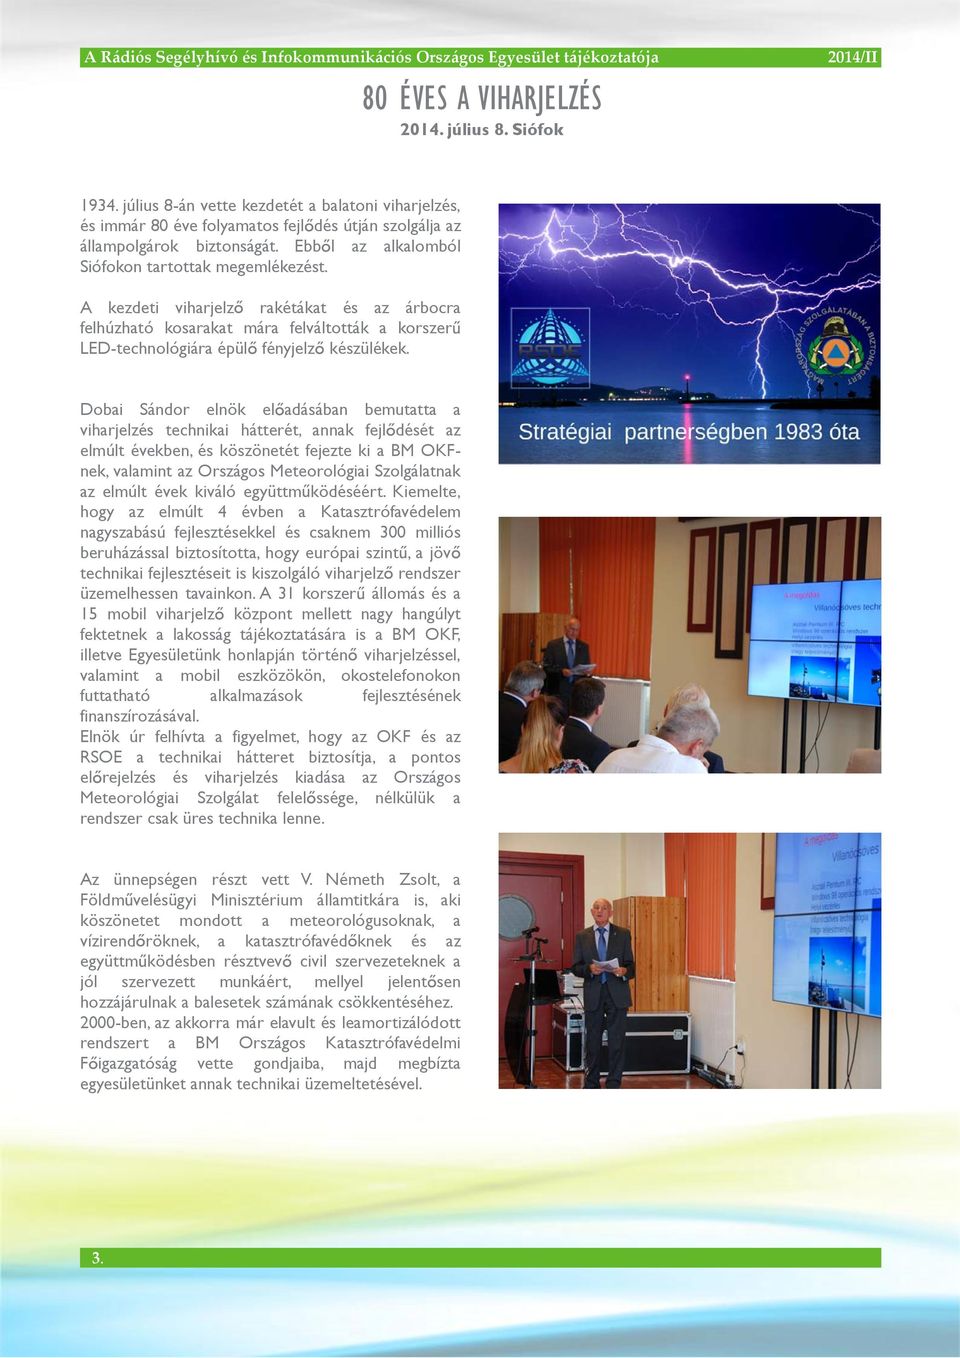 Dobai Sándor elnök el adásában bemutatta a viharjelzés technikai hátterét, annak fejl dését az elmúlt években, és köszönetét fejezte ki a BM OKFnek, valamint az Országos Meteorológiai Szolgálatnak az